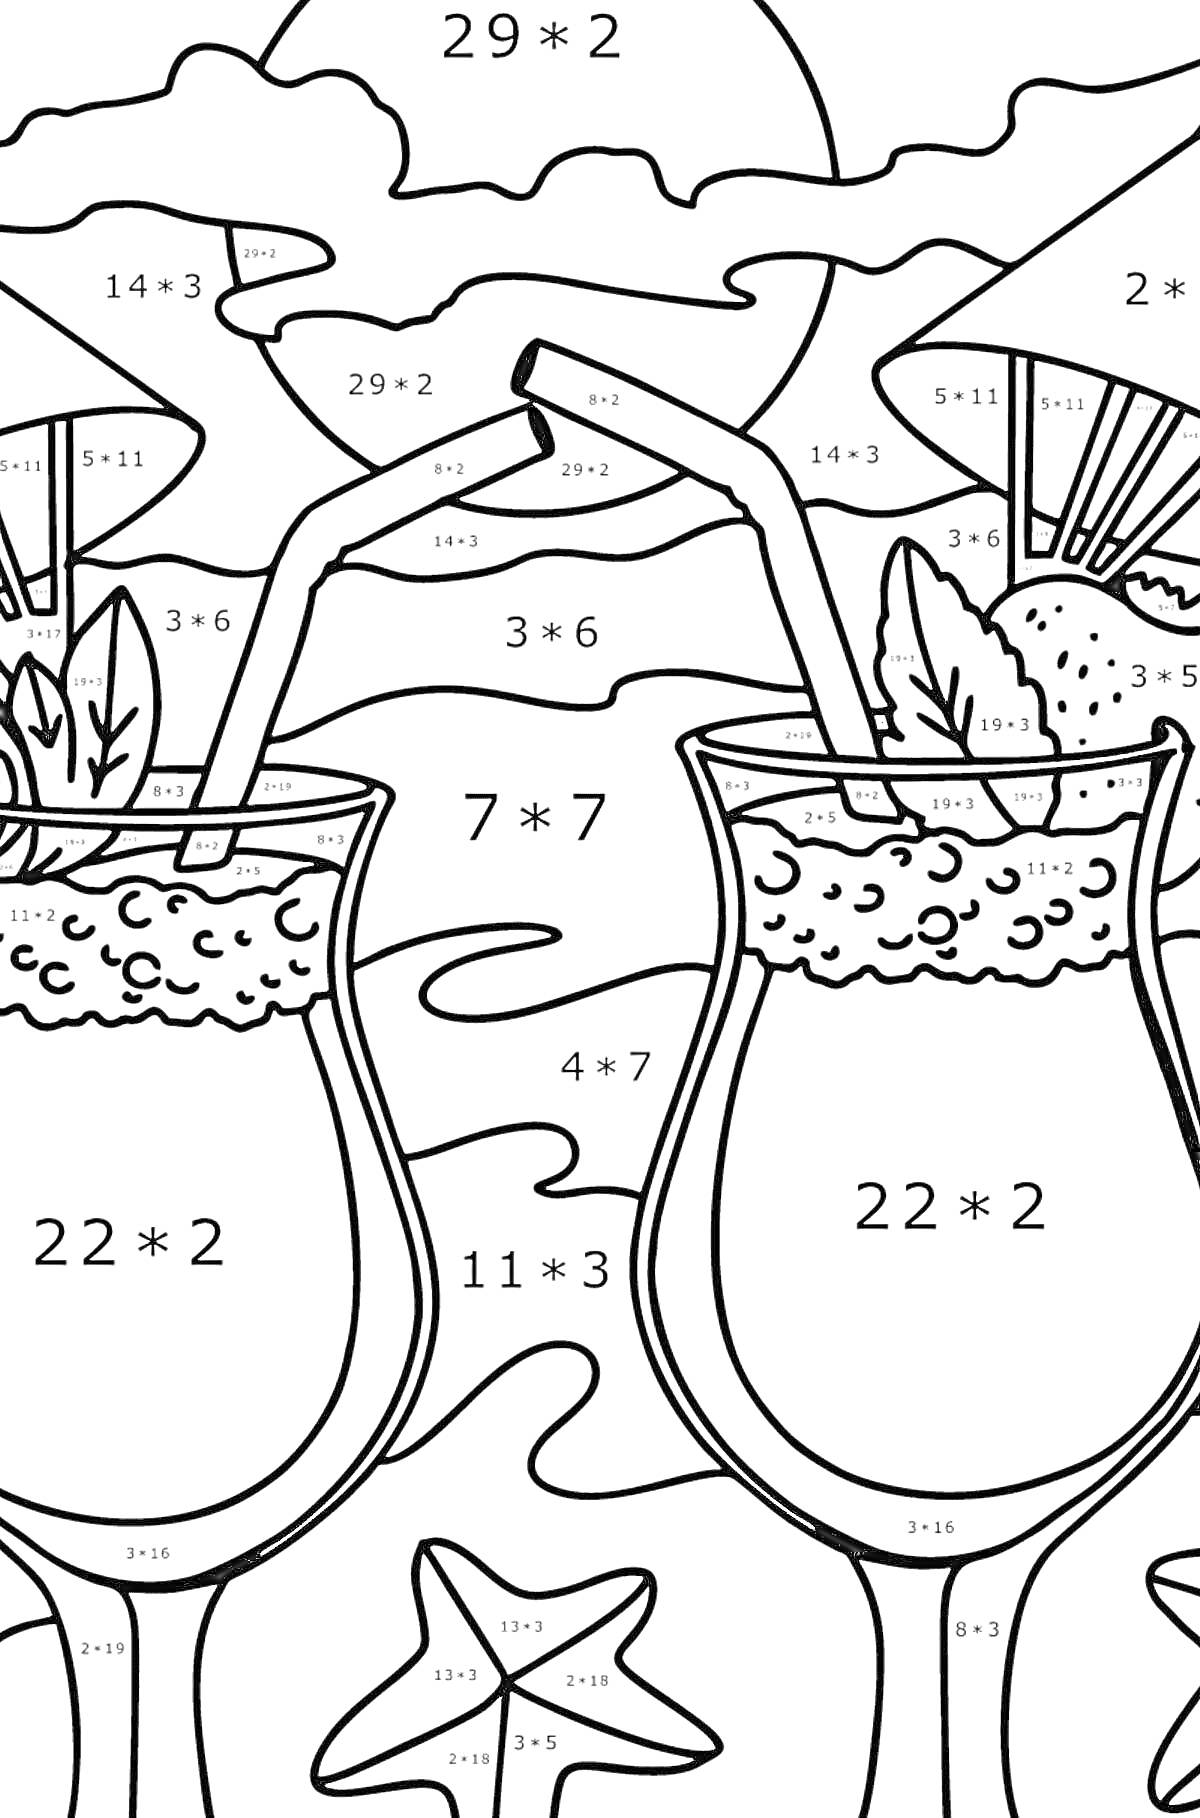 Раскраска Два коктейля в бокалах с трубочками, кружочками льда и листьями мяты, ветка с лаймом, звездочка